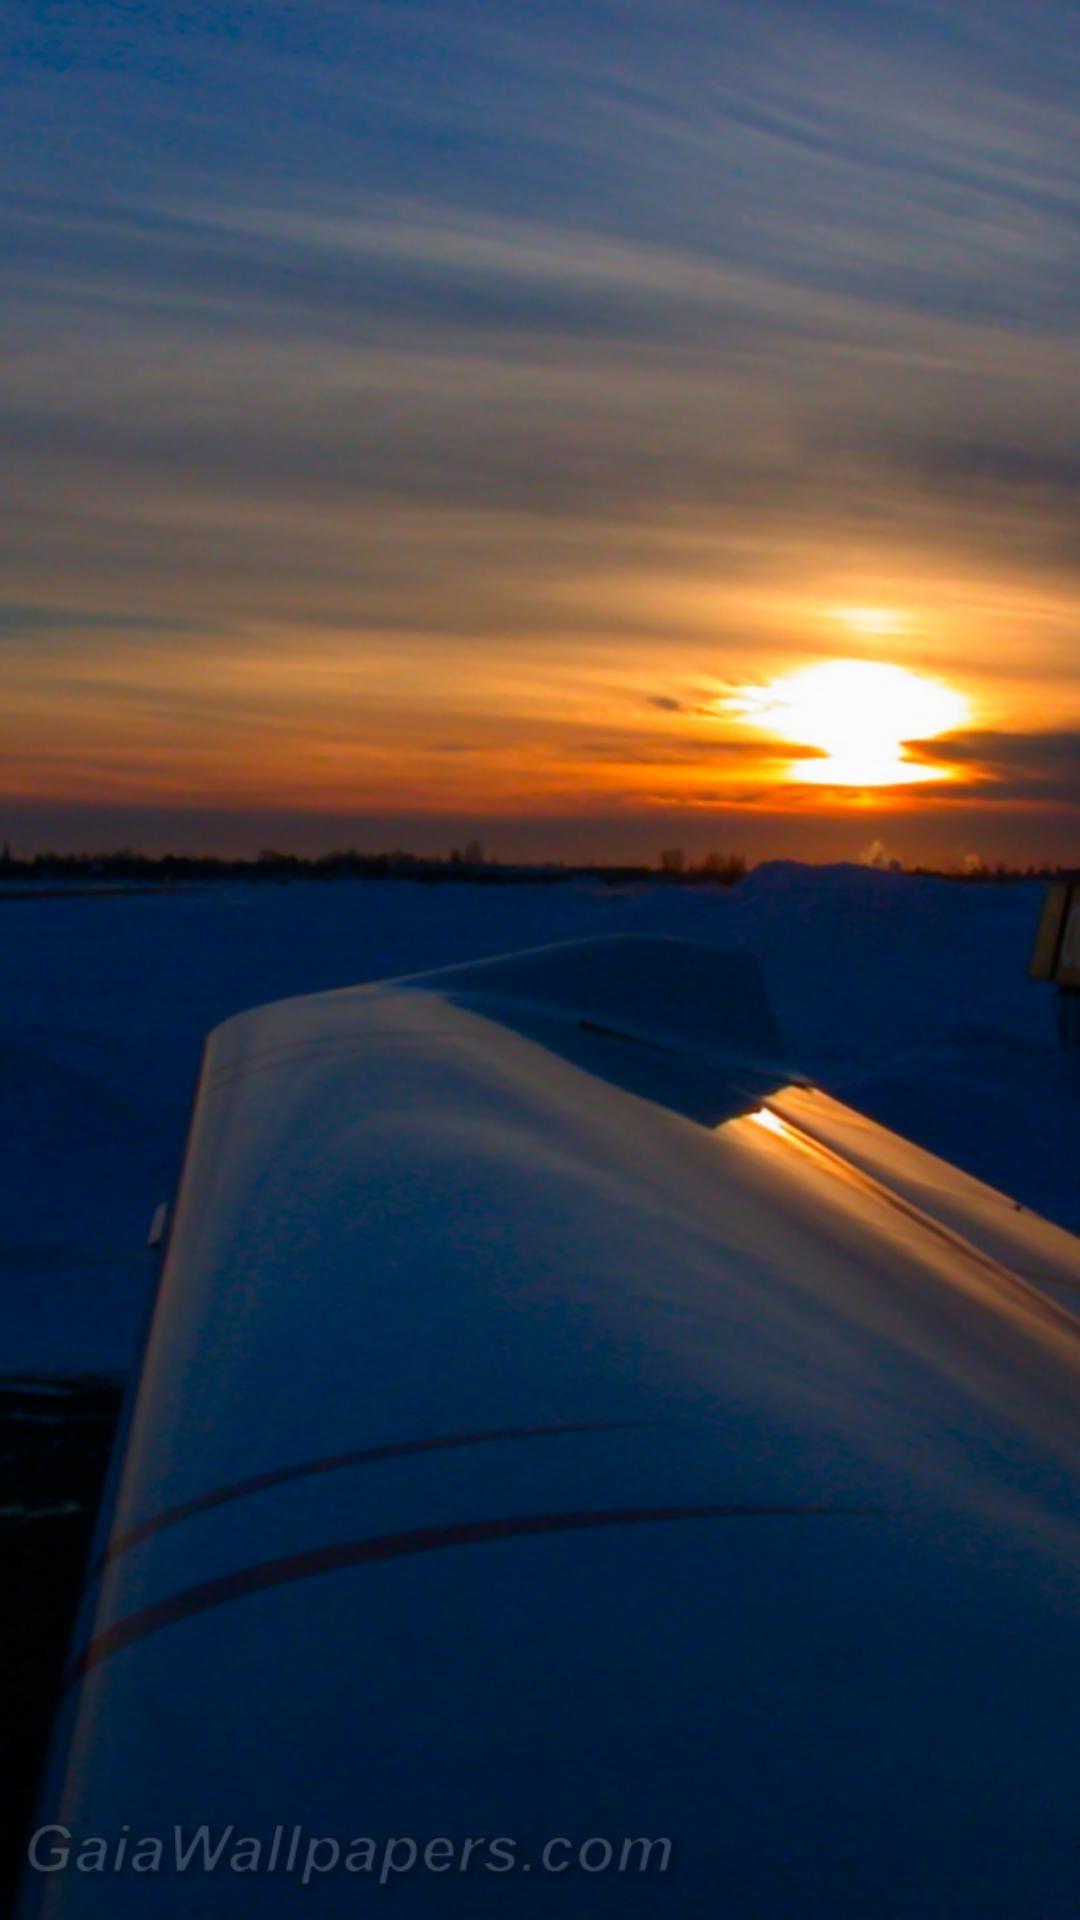 Coucher de soleil d'hiver après un tour d'avion - Fonds d'écran gratuits